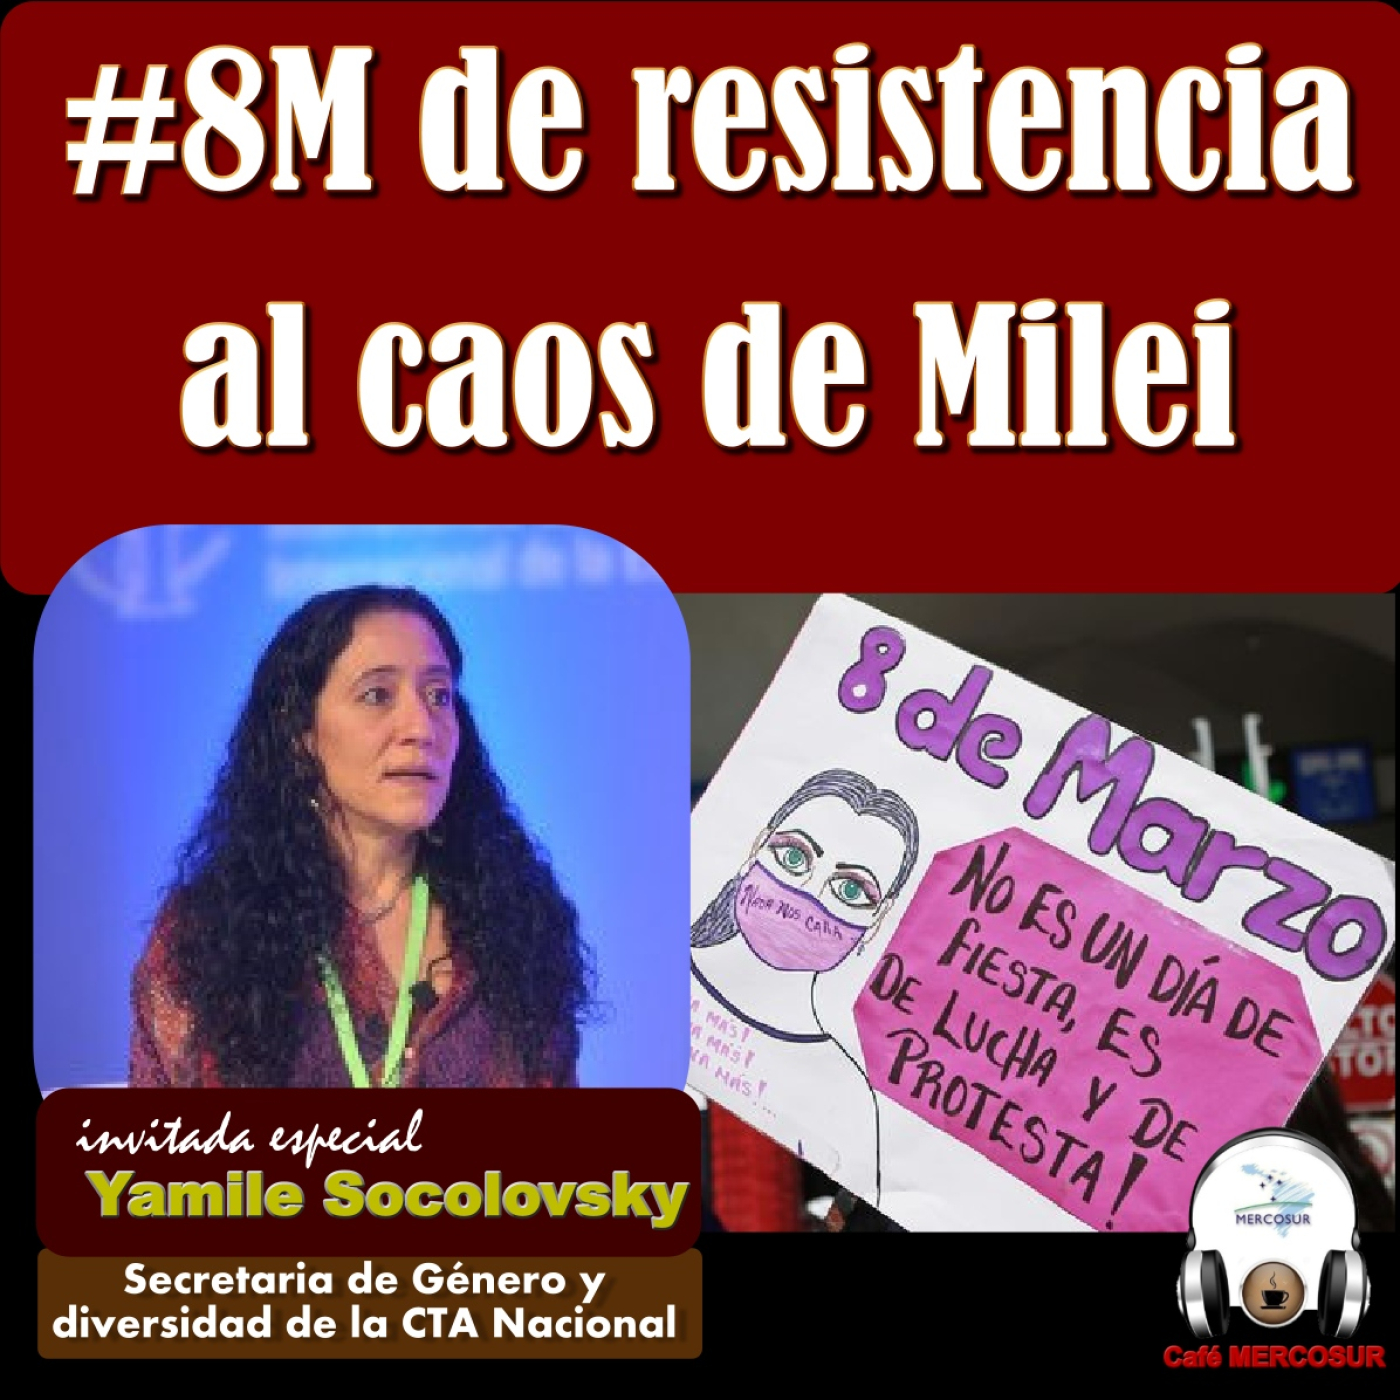 #8M de lucha y resistencia a Milei